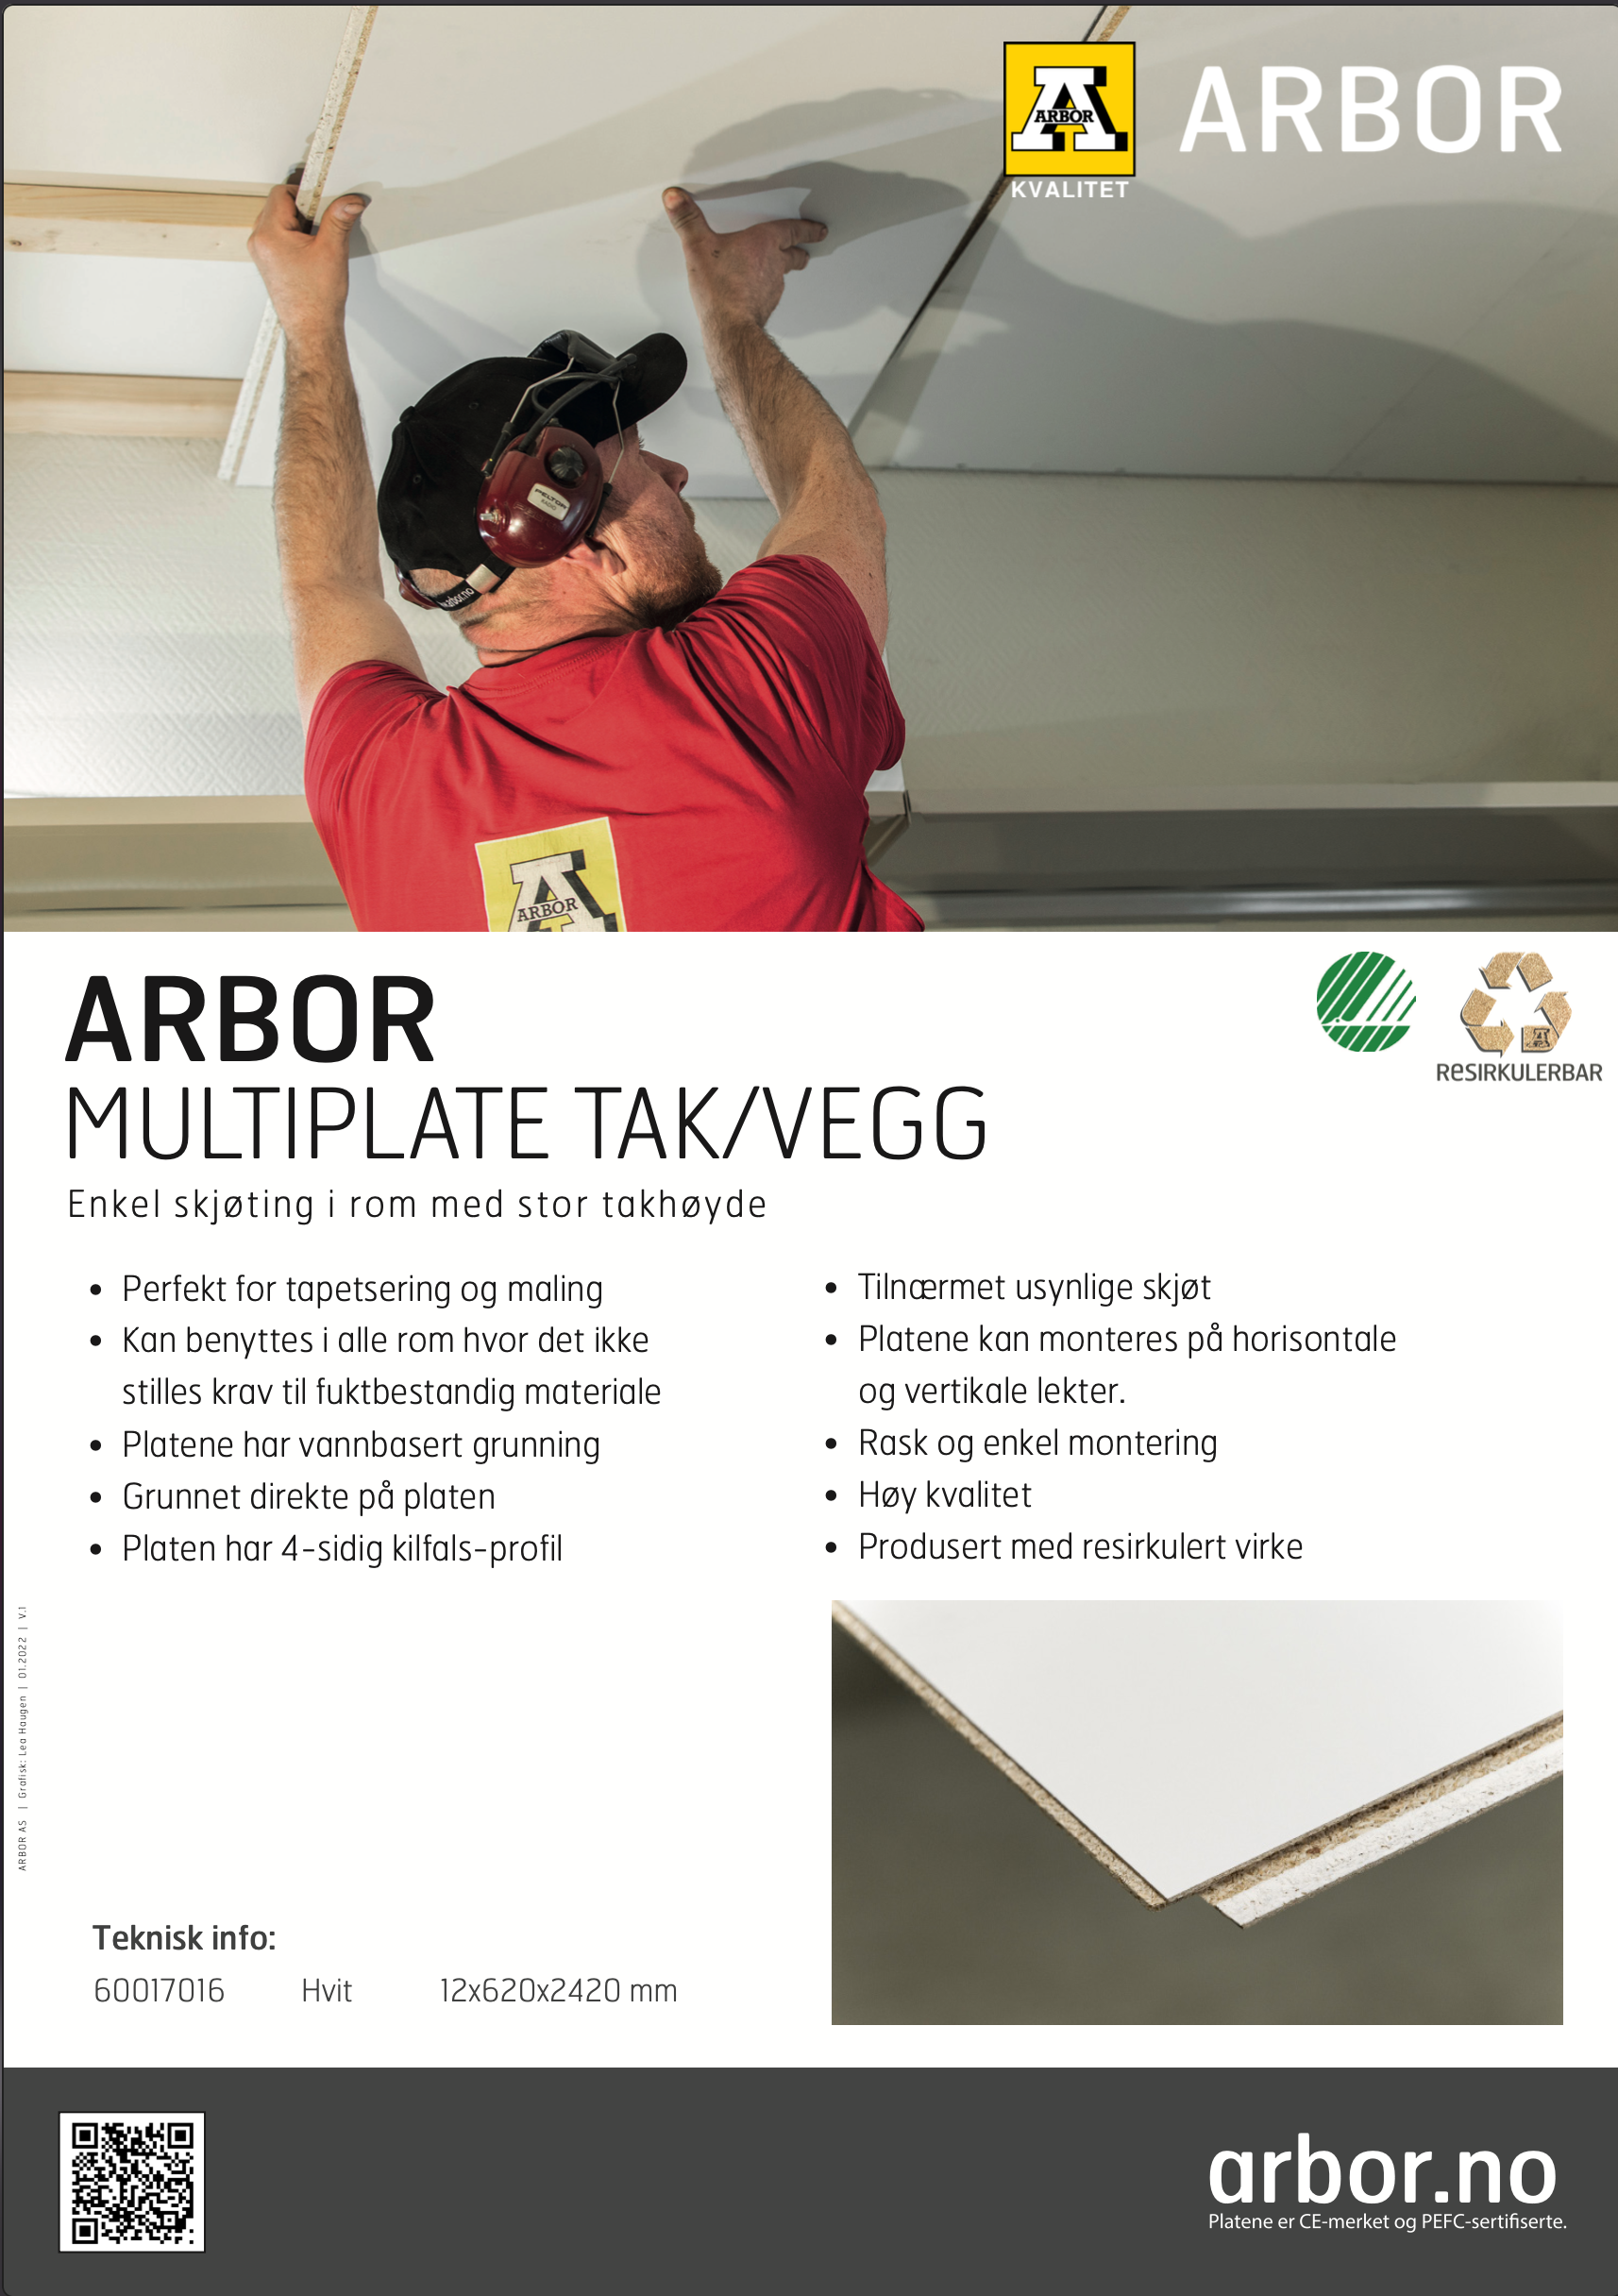 Infoplakat om Arbor Multiplate tak/vegg spon